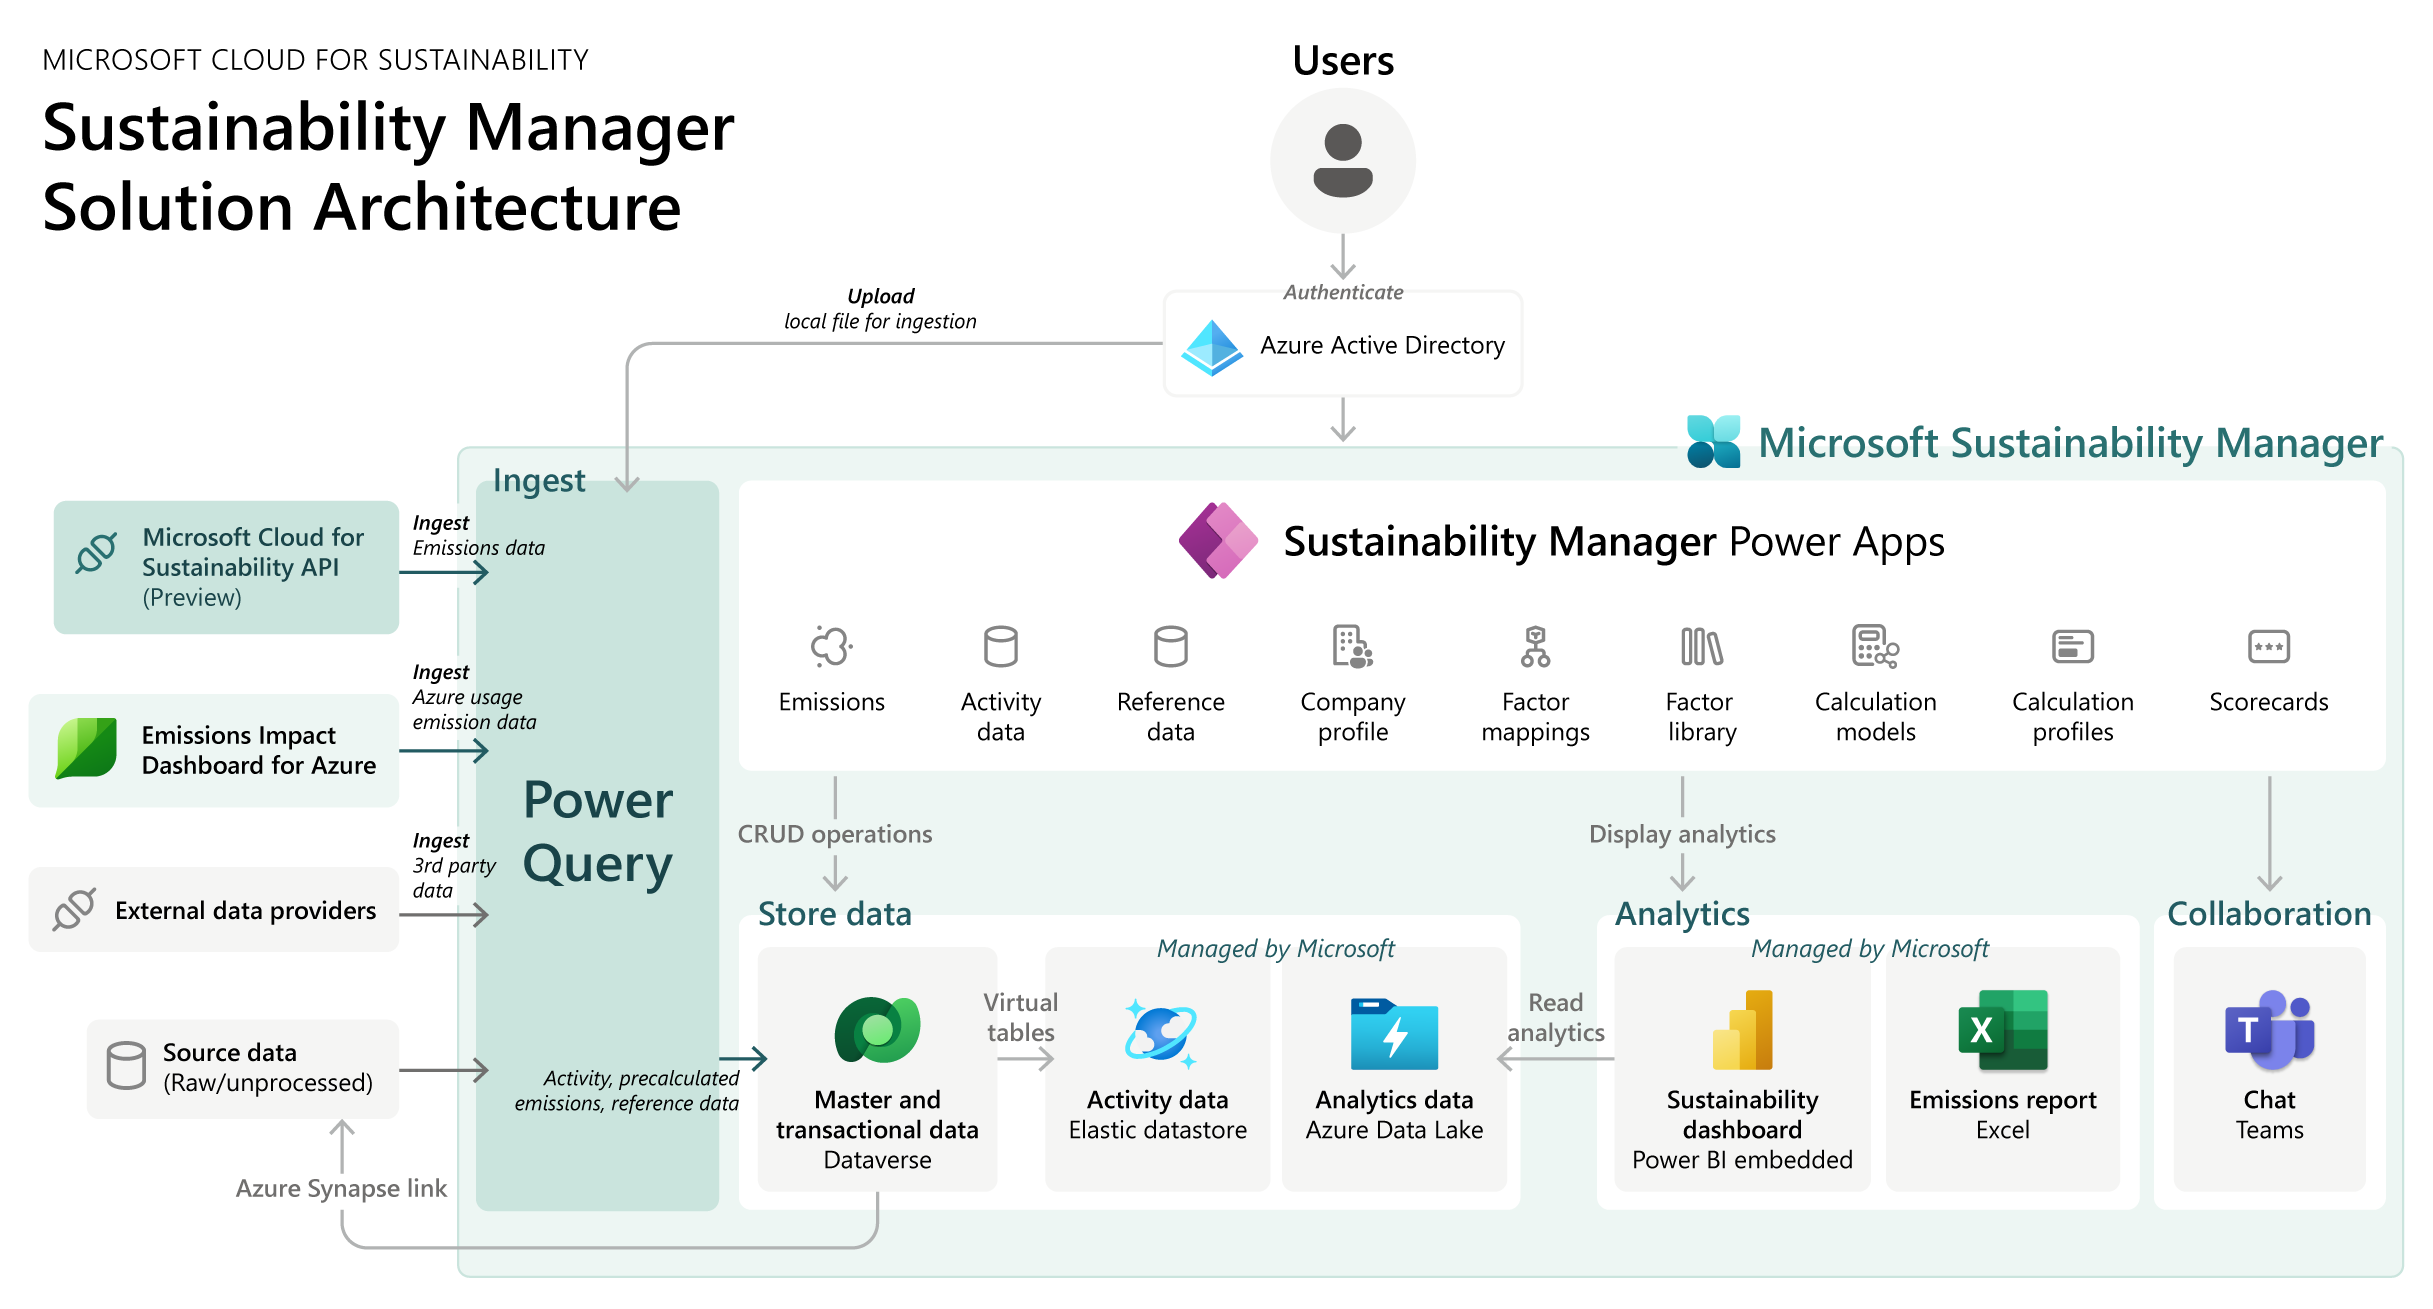 Un diagramma che mostra l'architettura di riferimento di Microsoft Sustainability Manager